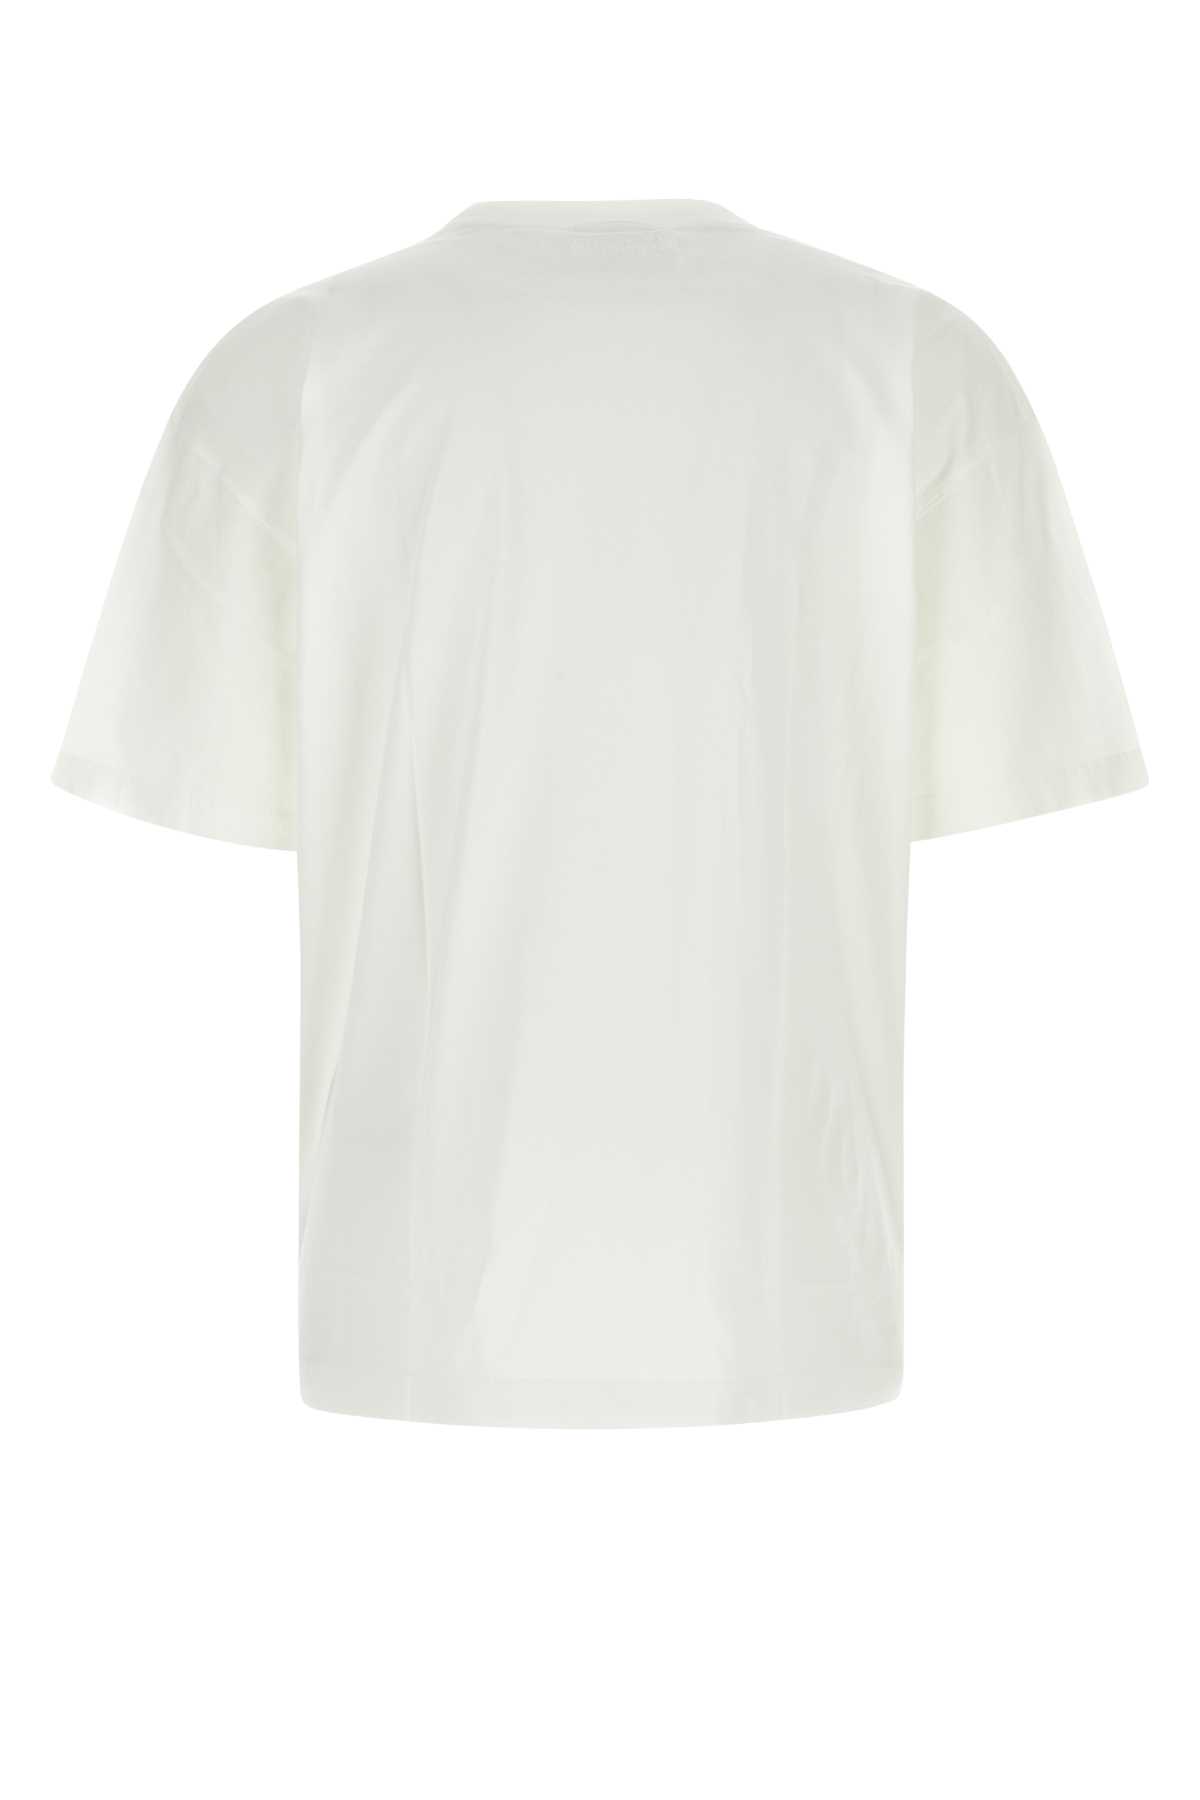 Shop Vetements White Cotton Oversize T-shirt